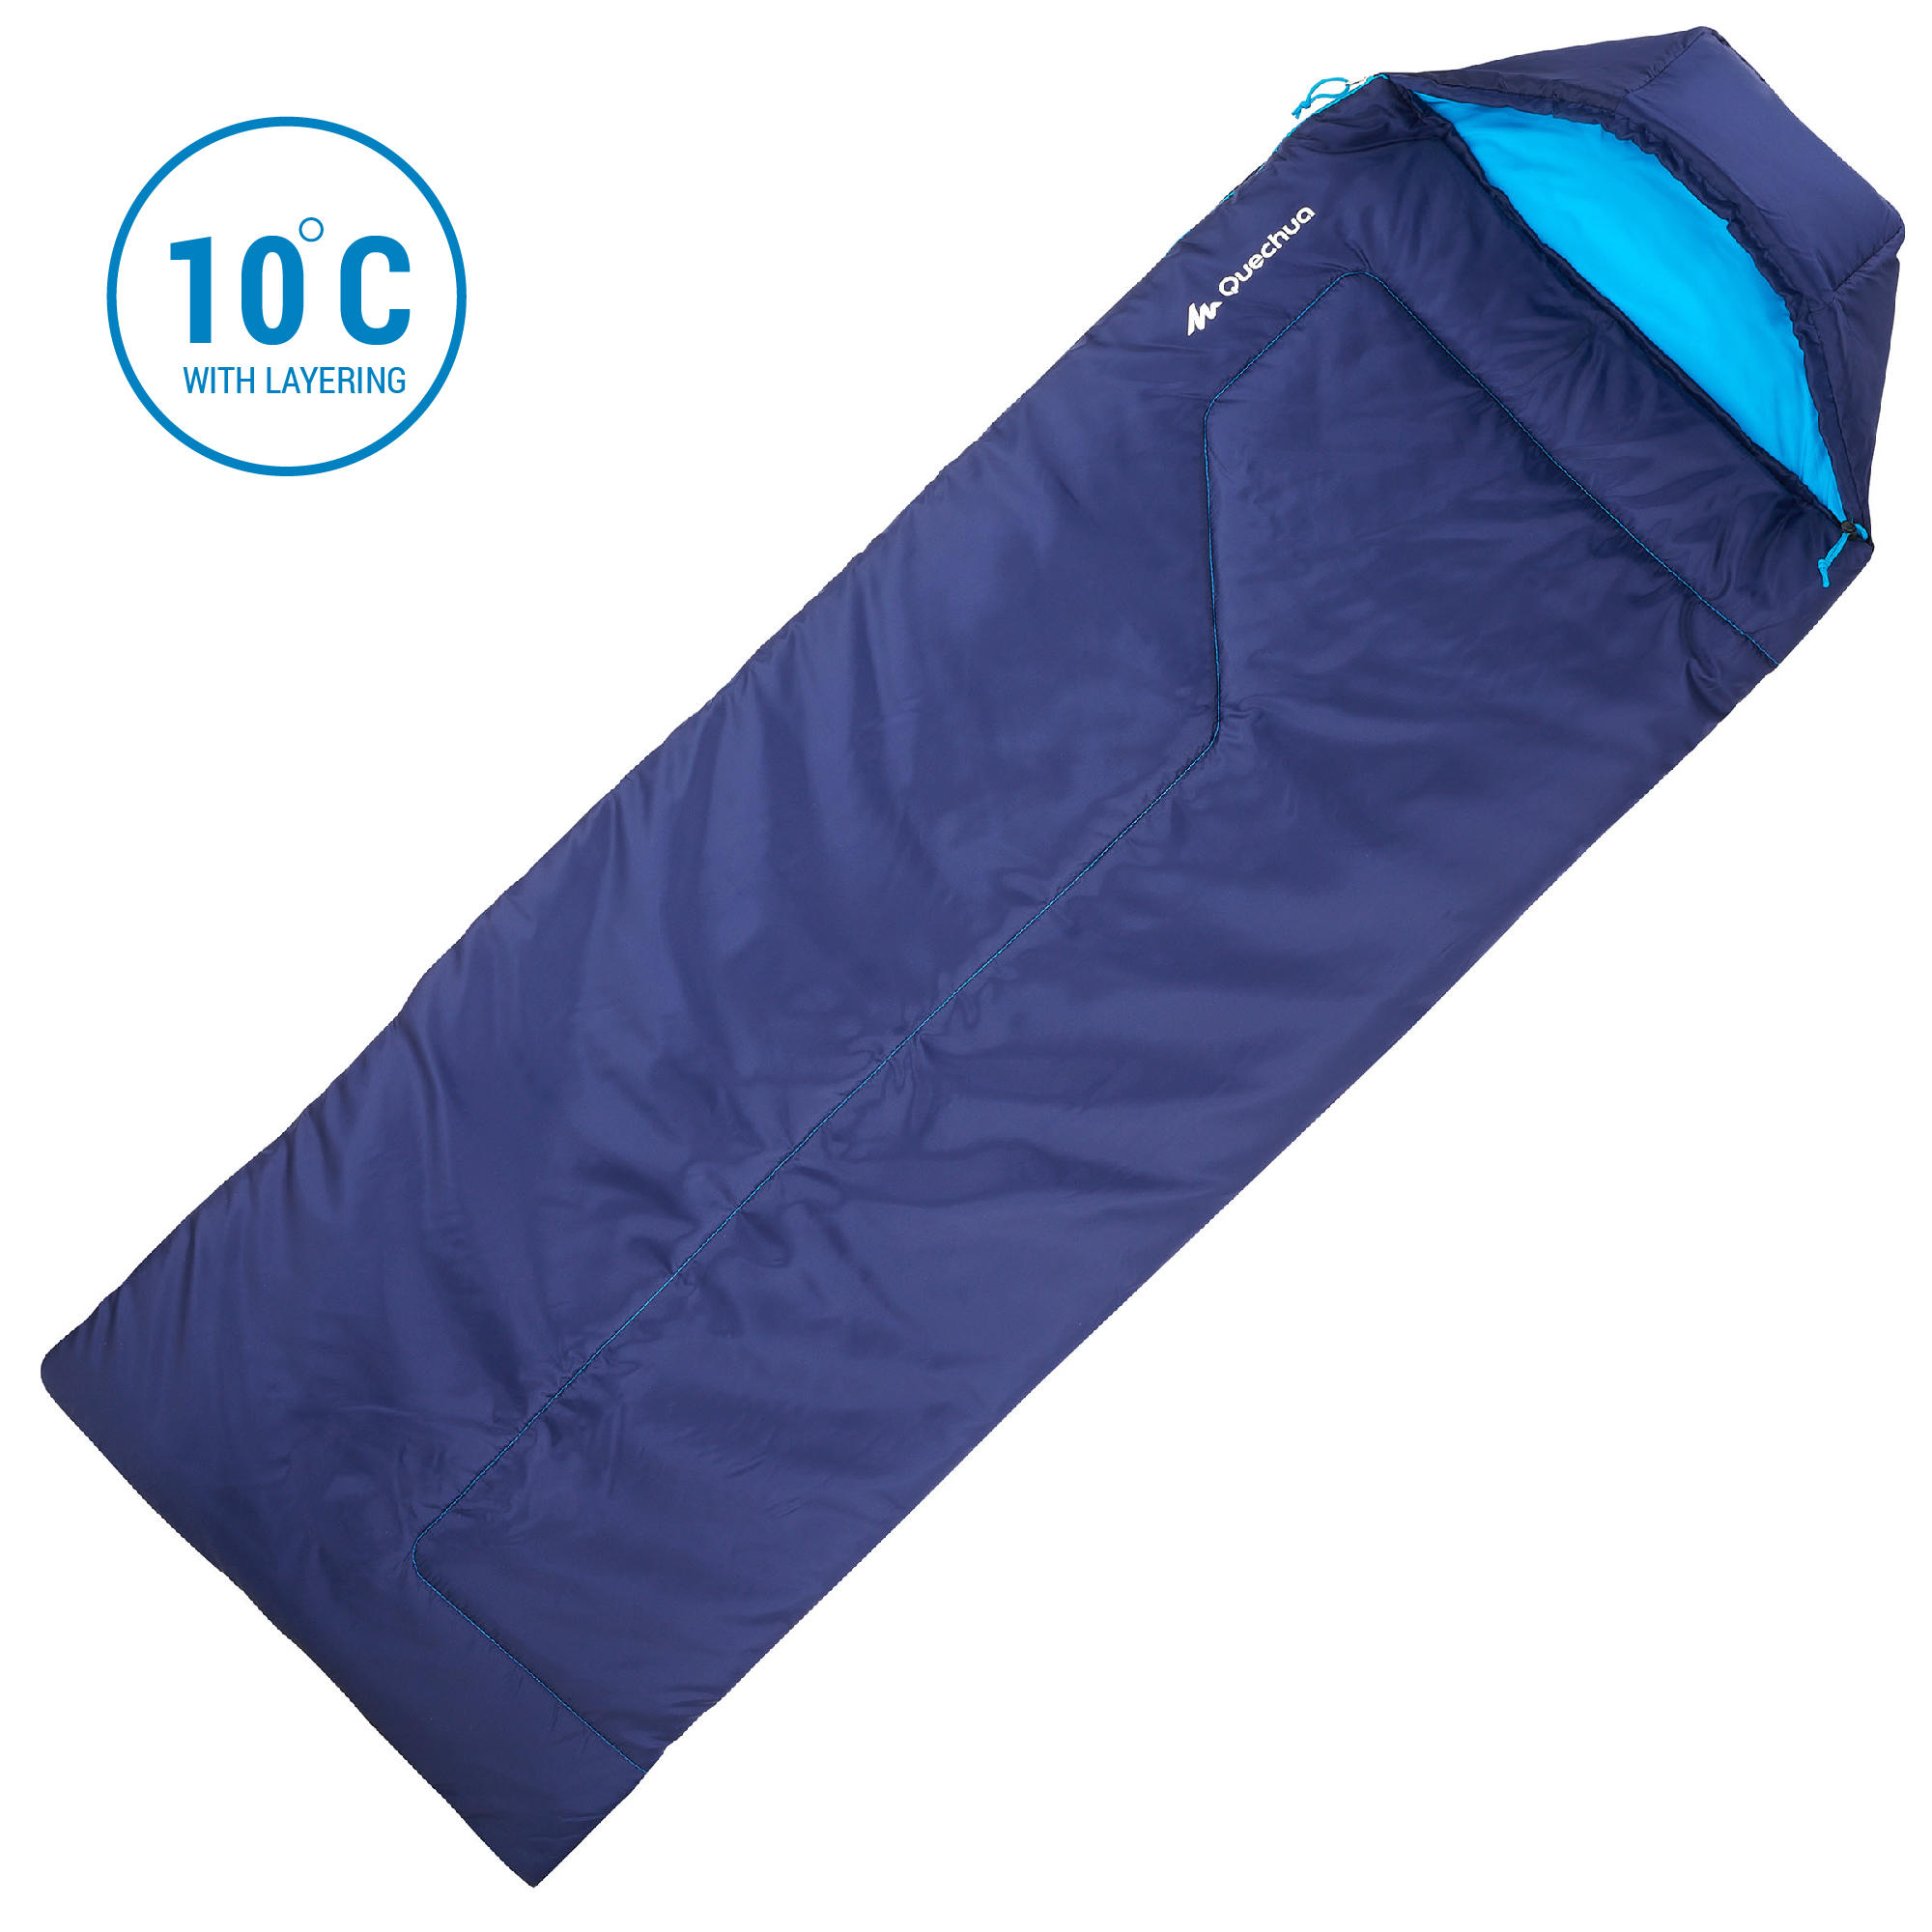 Sleeping Bag Forclaz 10° - Blue 